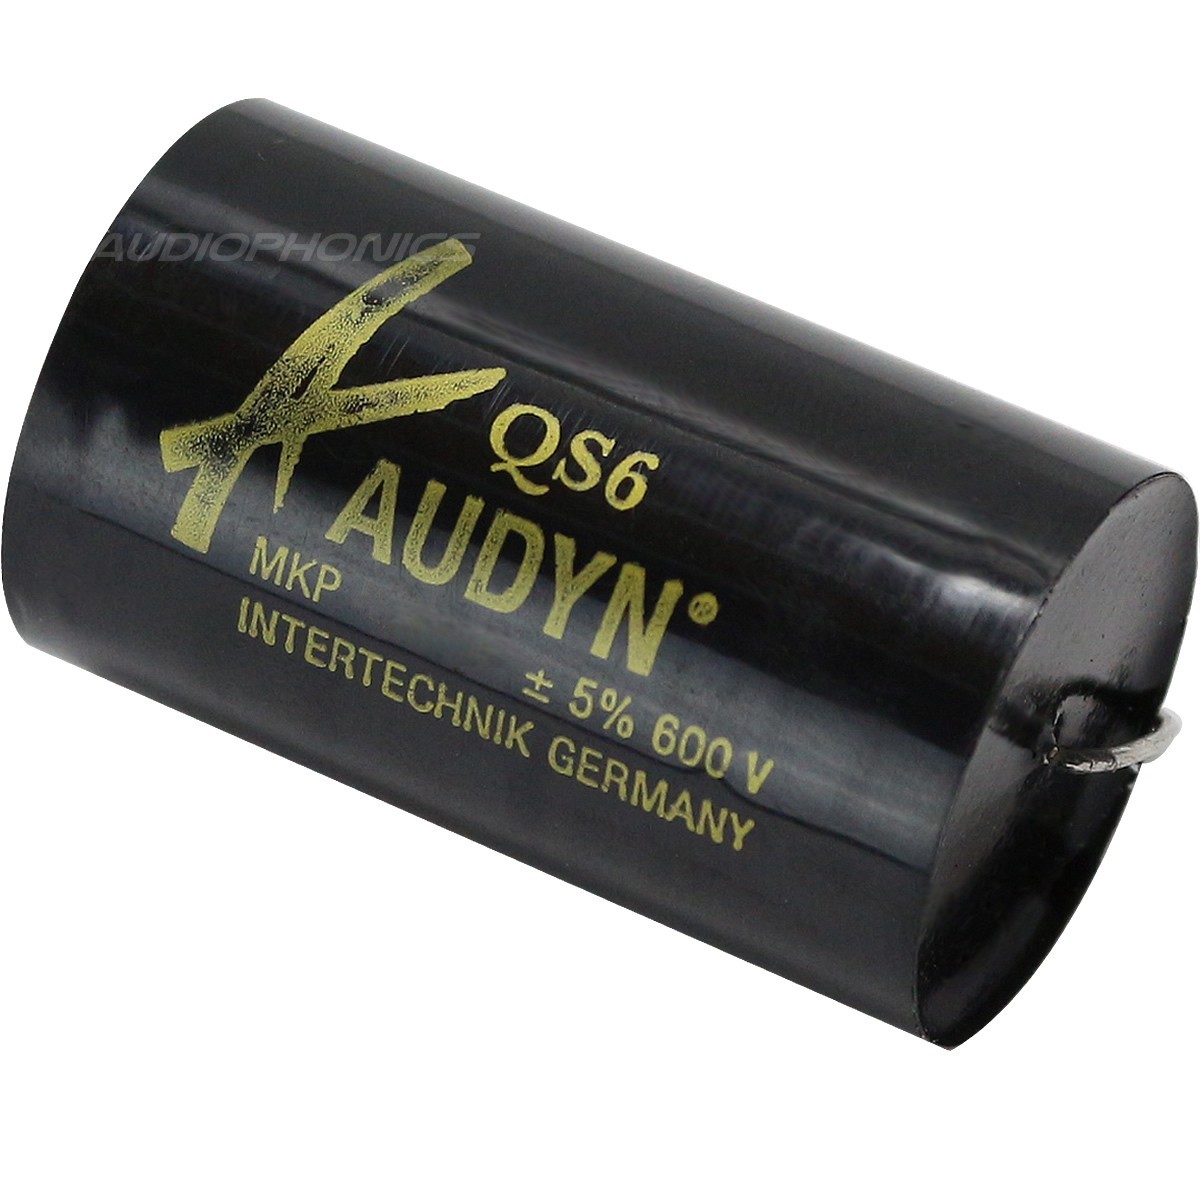 AUDYN CAP QS6 MKP Capacitor 600V 0.33µF